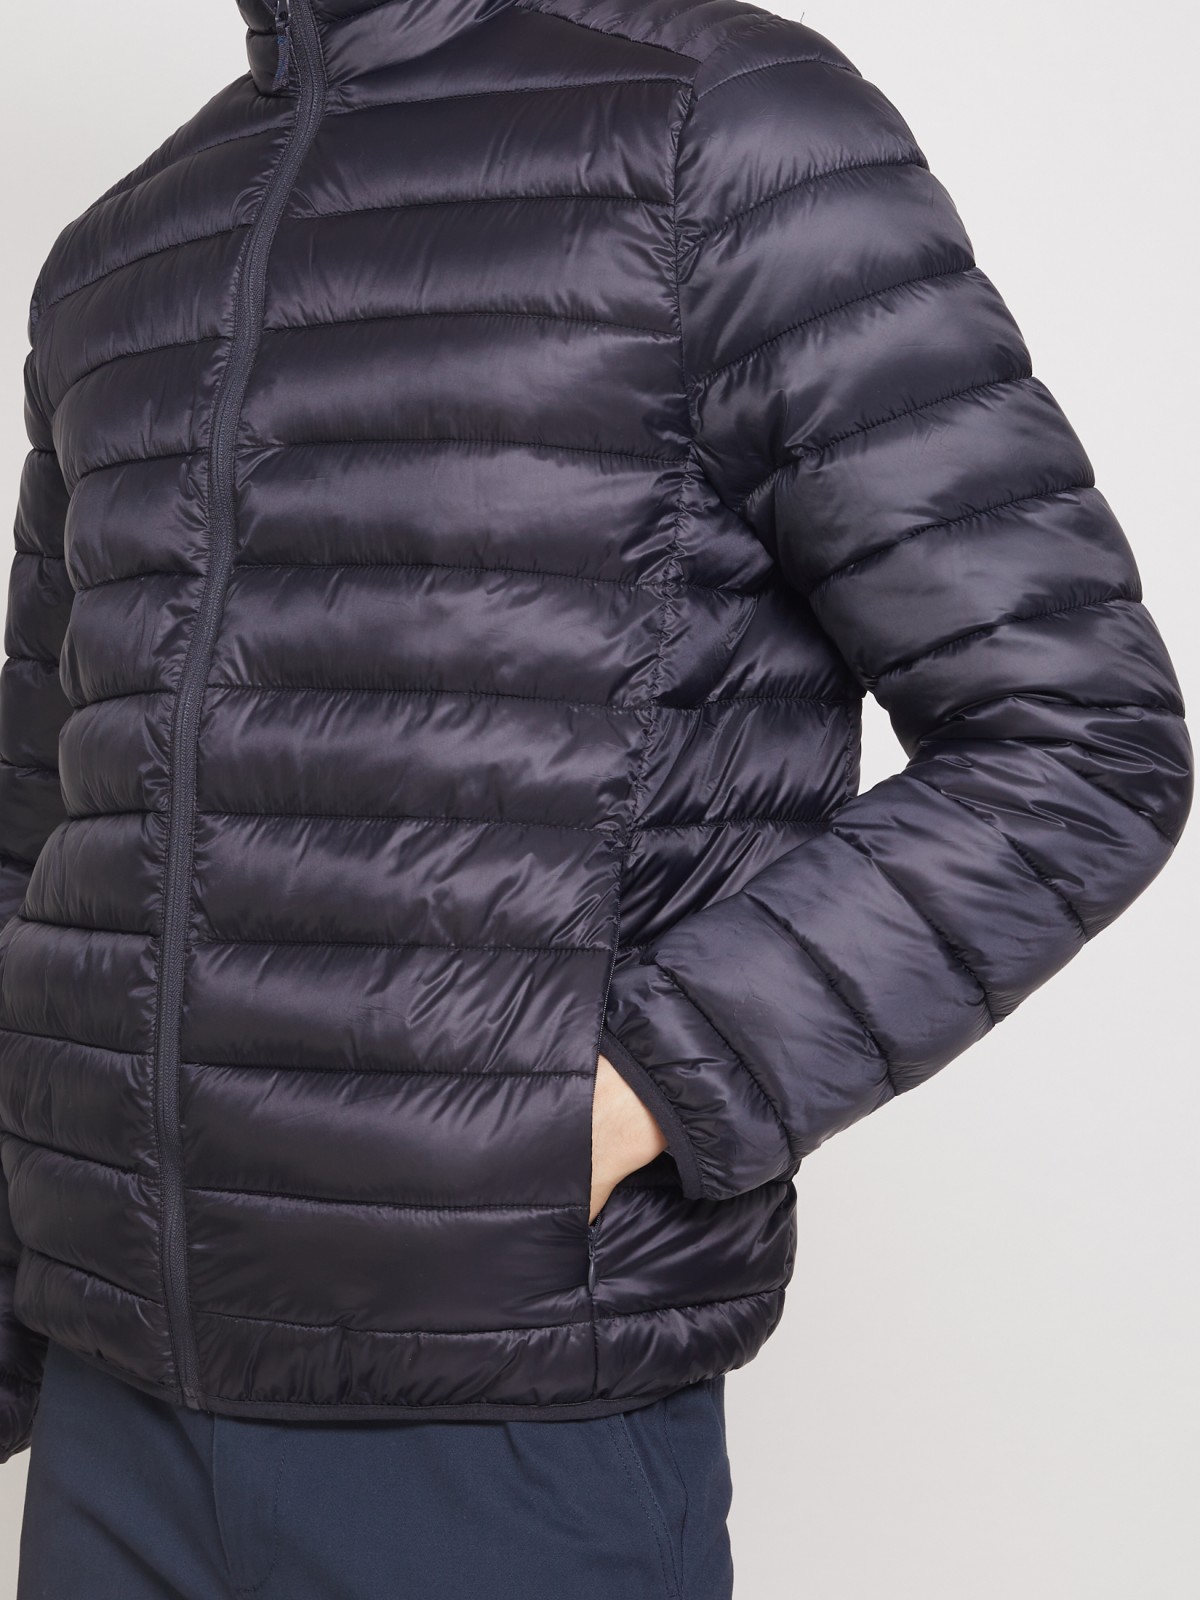 Ультралёгкая стёганая куртка с воротником-стойкой zolla 011335102214, цвет синий, размер S - фото 5